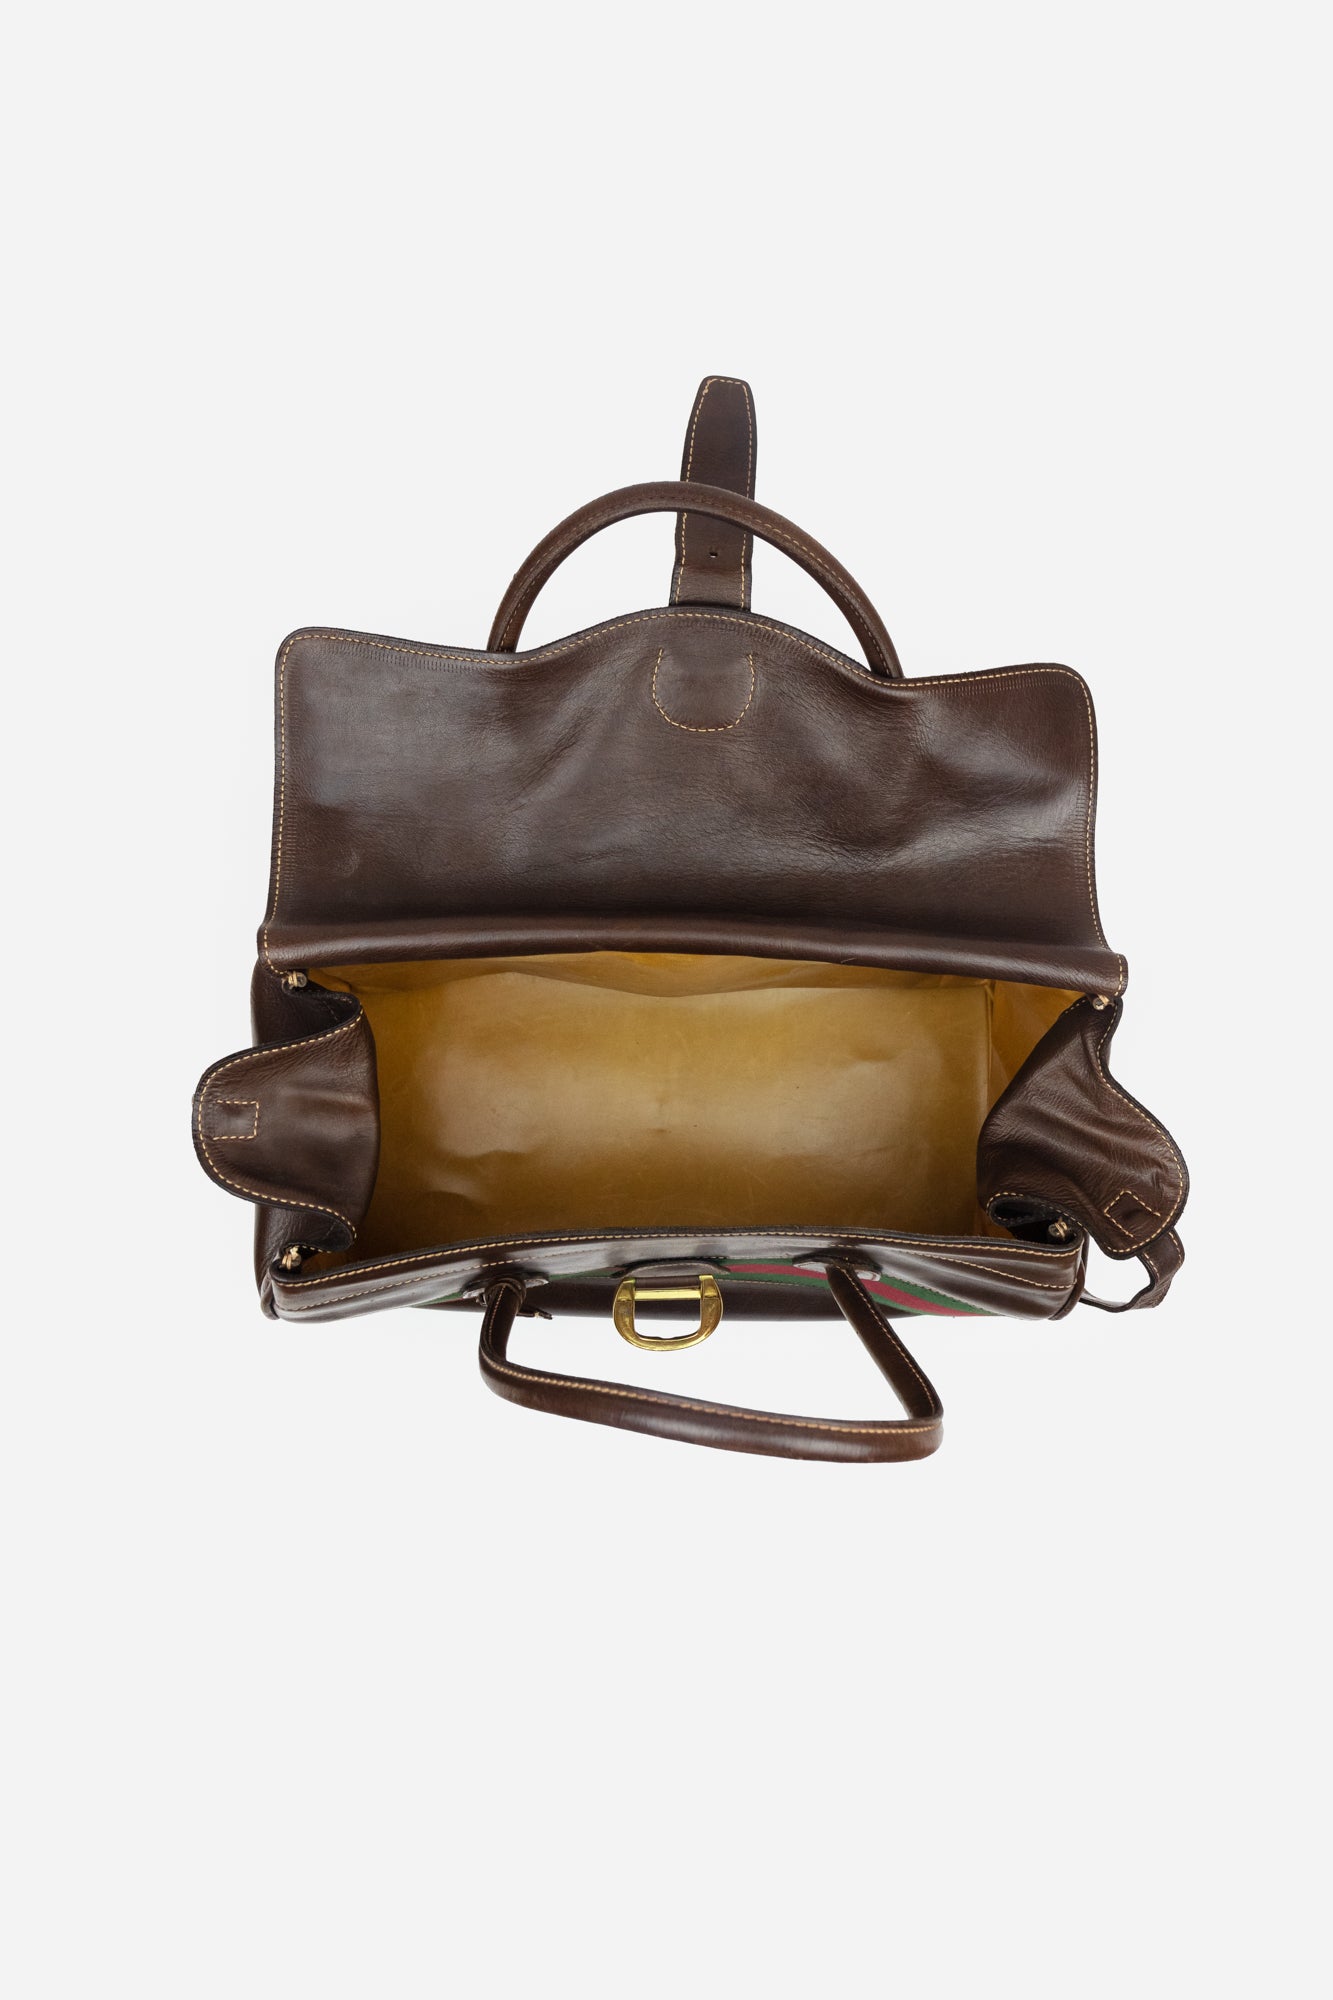 Vintage Leather Web Travel Bag